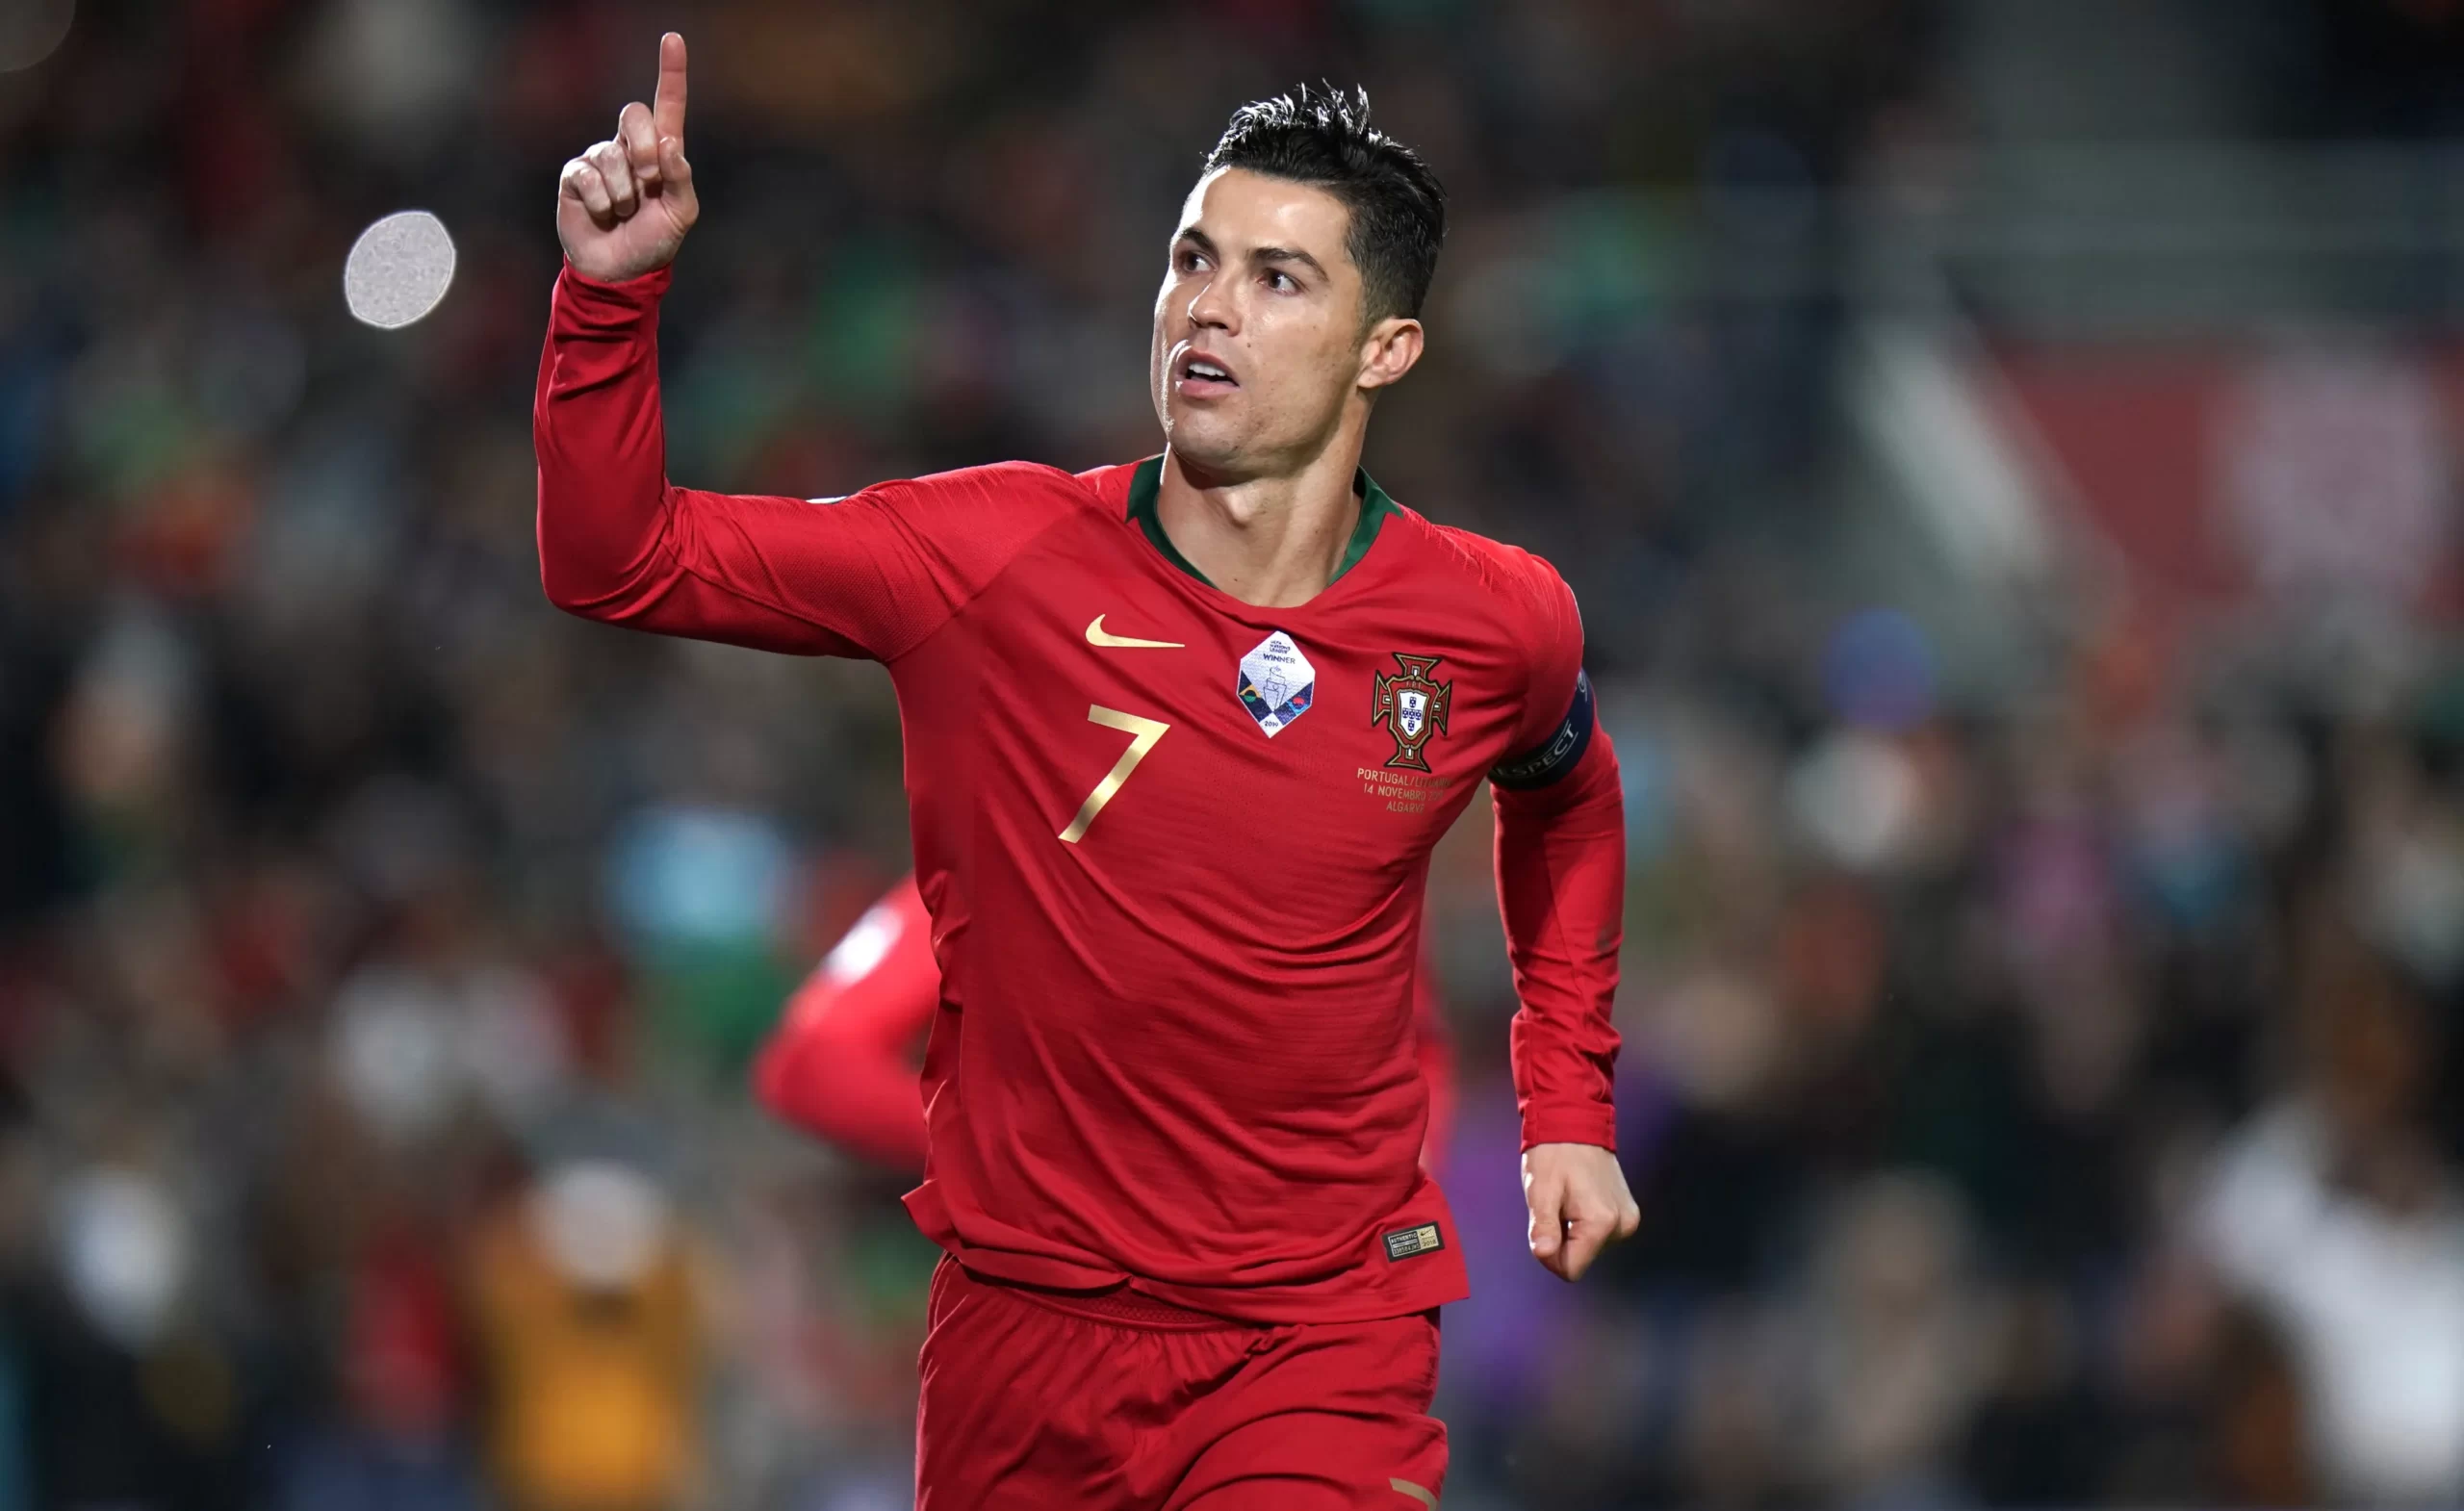 Cristiano Ronaldo khoác áo của nhiều câu lạc bộ bóng đá nổi tiếng